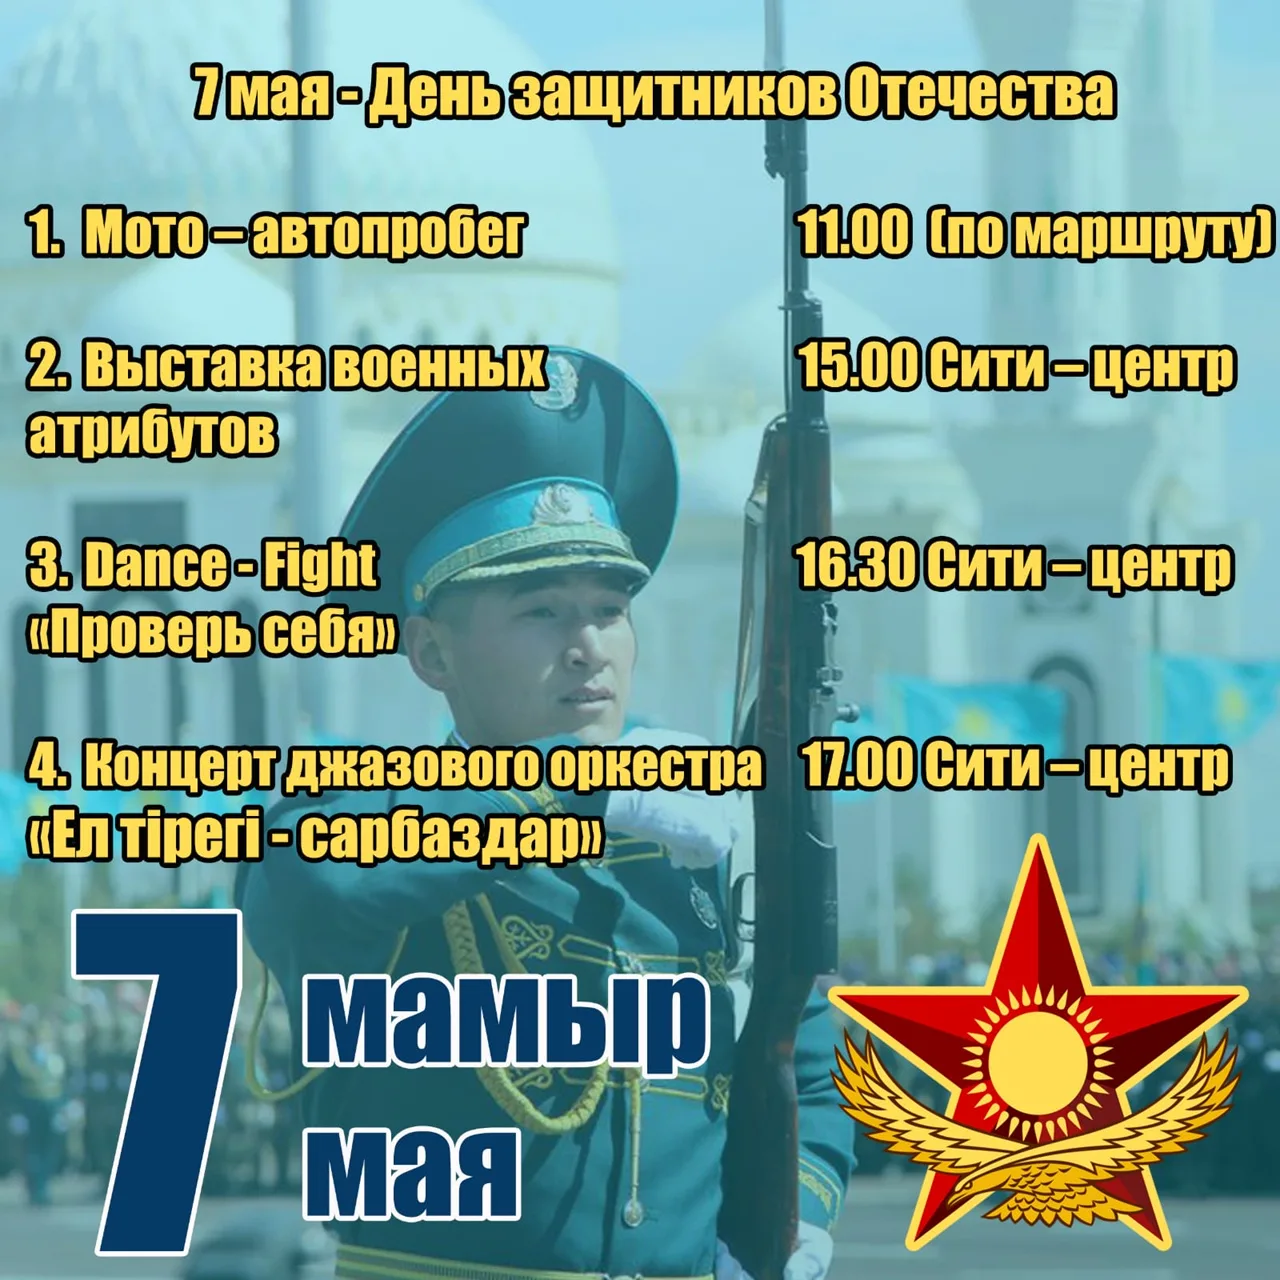 7 мая праздники в этот день. 7 Мая день защитника Отечества. День защитника Отечества Казахстан. 7 Мая день защитника Отечества в Казахстане. Денъзащитника Отечества в Казахстане.